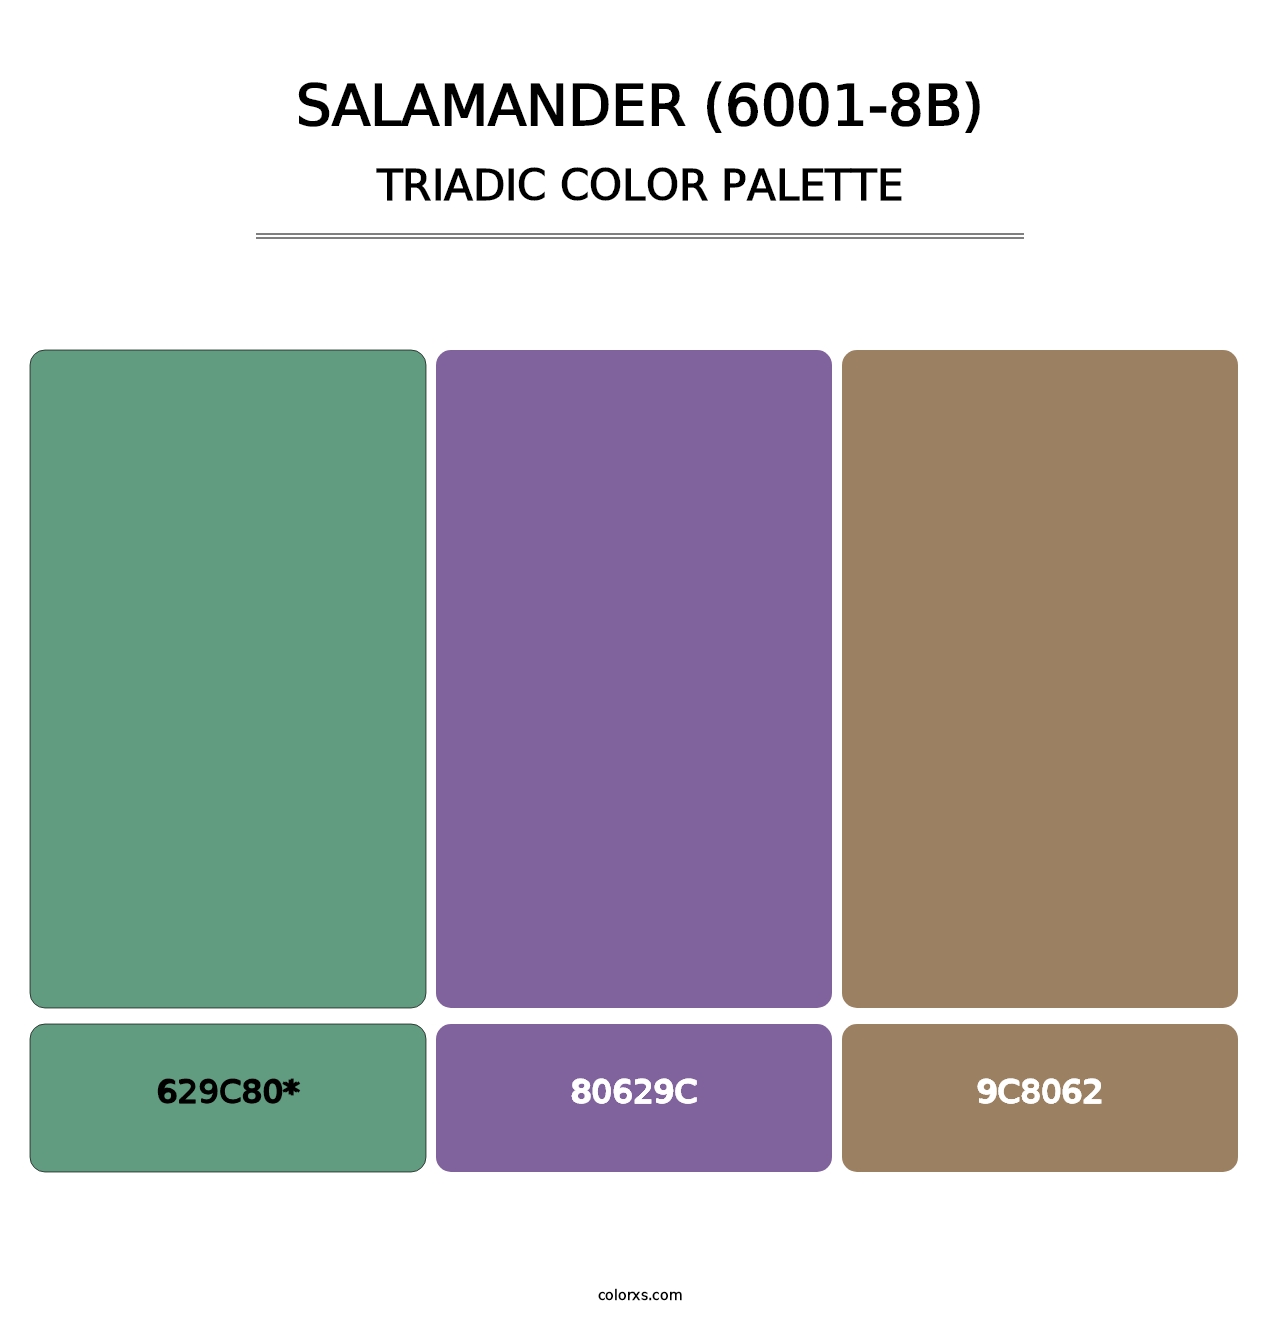 Salamander (6001-8B) - Triadic Color Palette